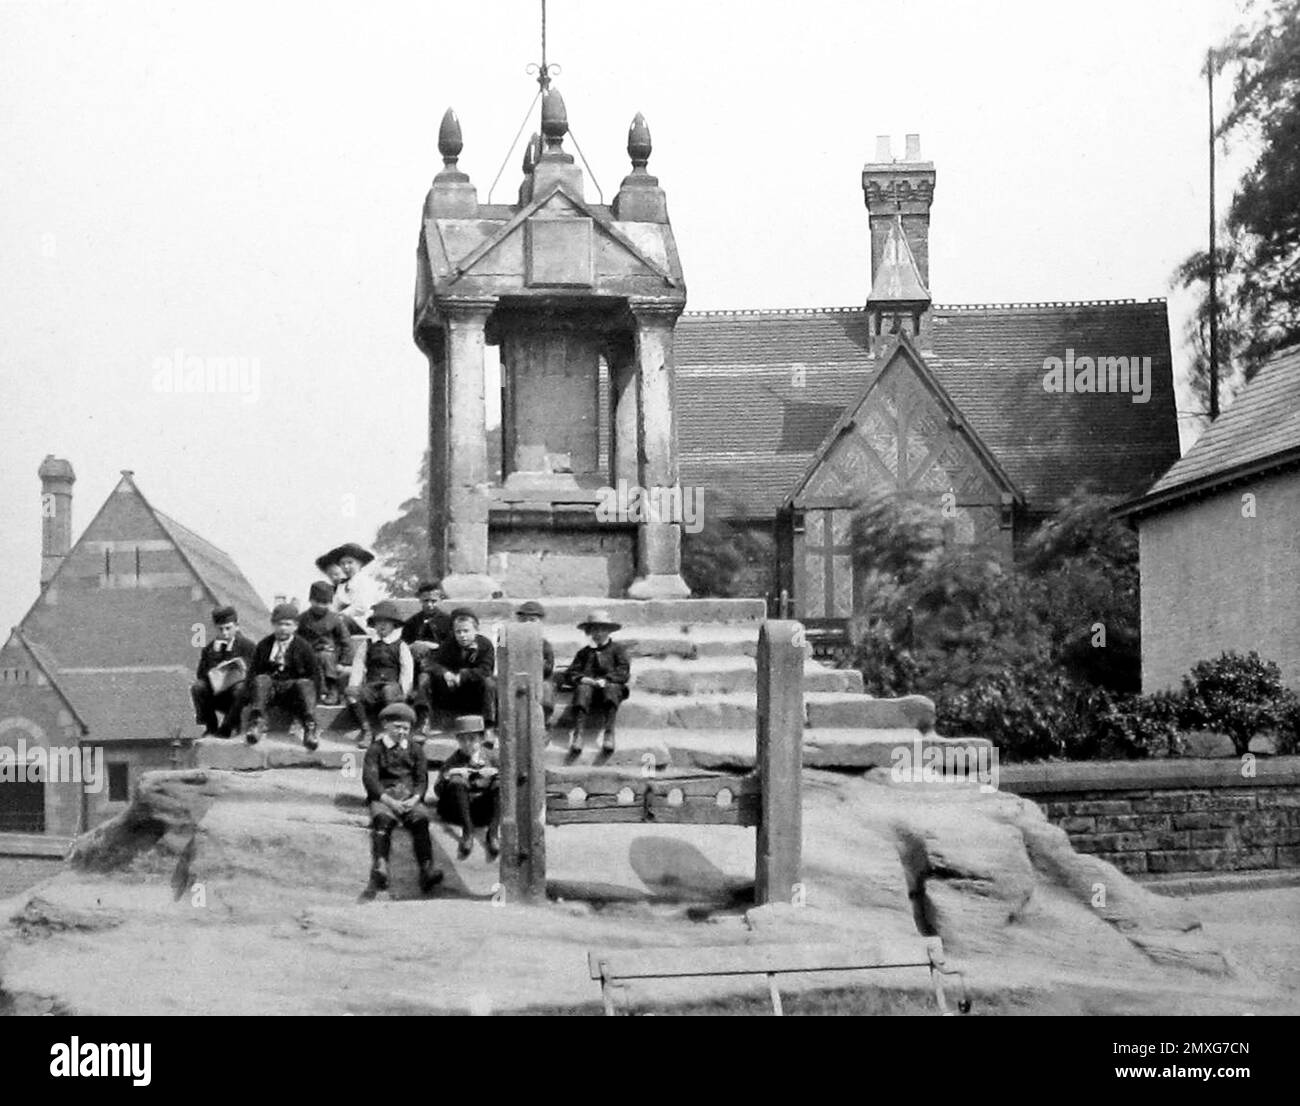 Les stocks, Lymm, Cheshire, début 1900s Banque D'Images